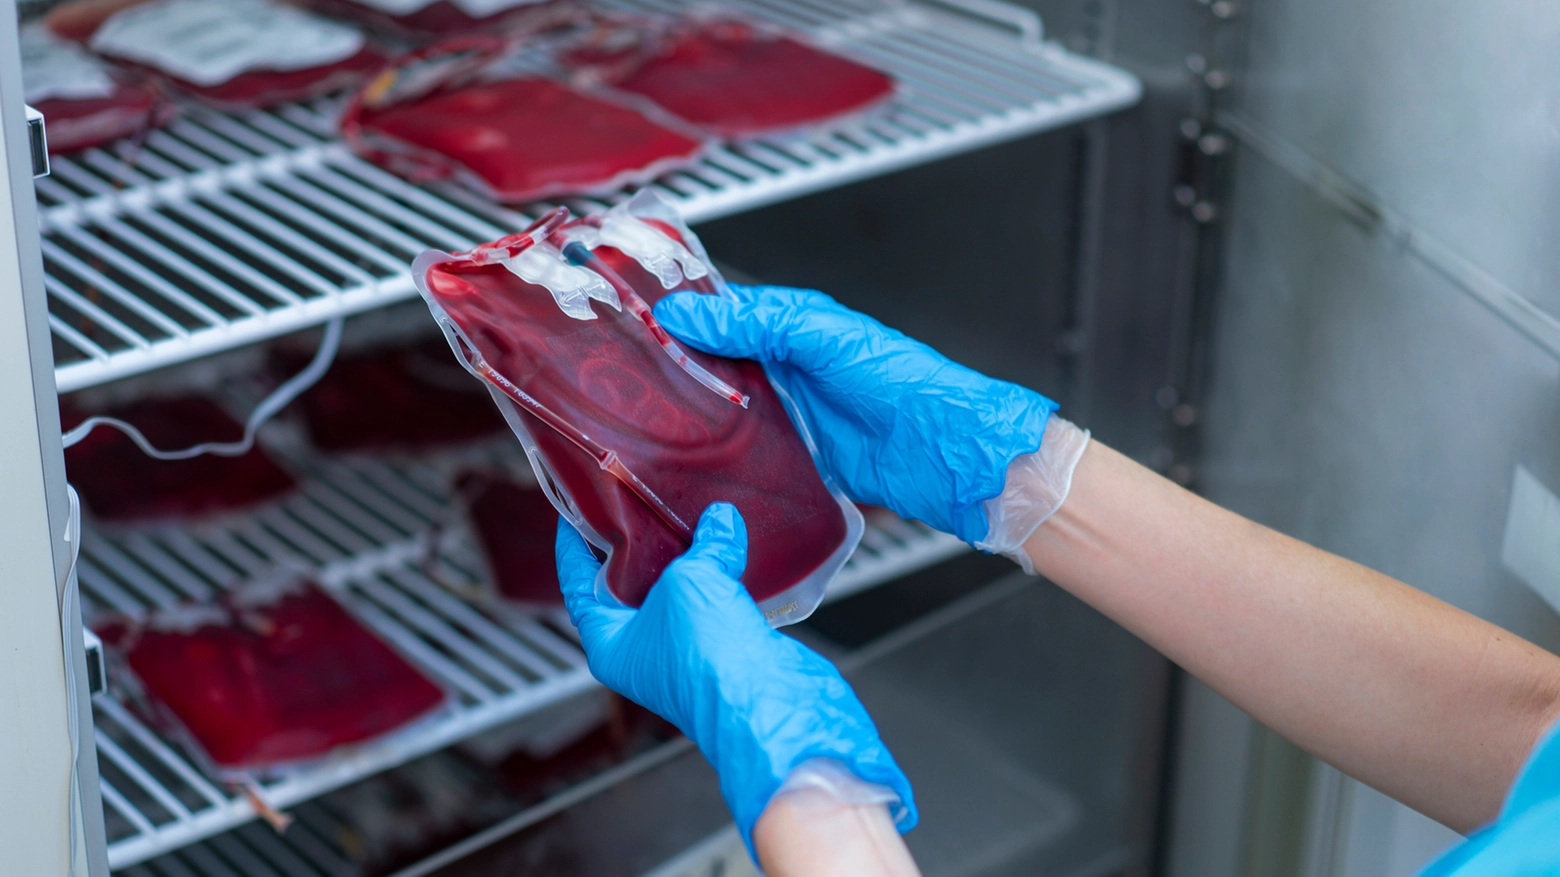 Trasfusioni di sangue illegali sui bambini al centro dell'inchiesta